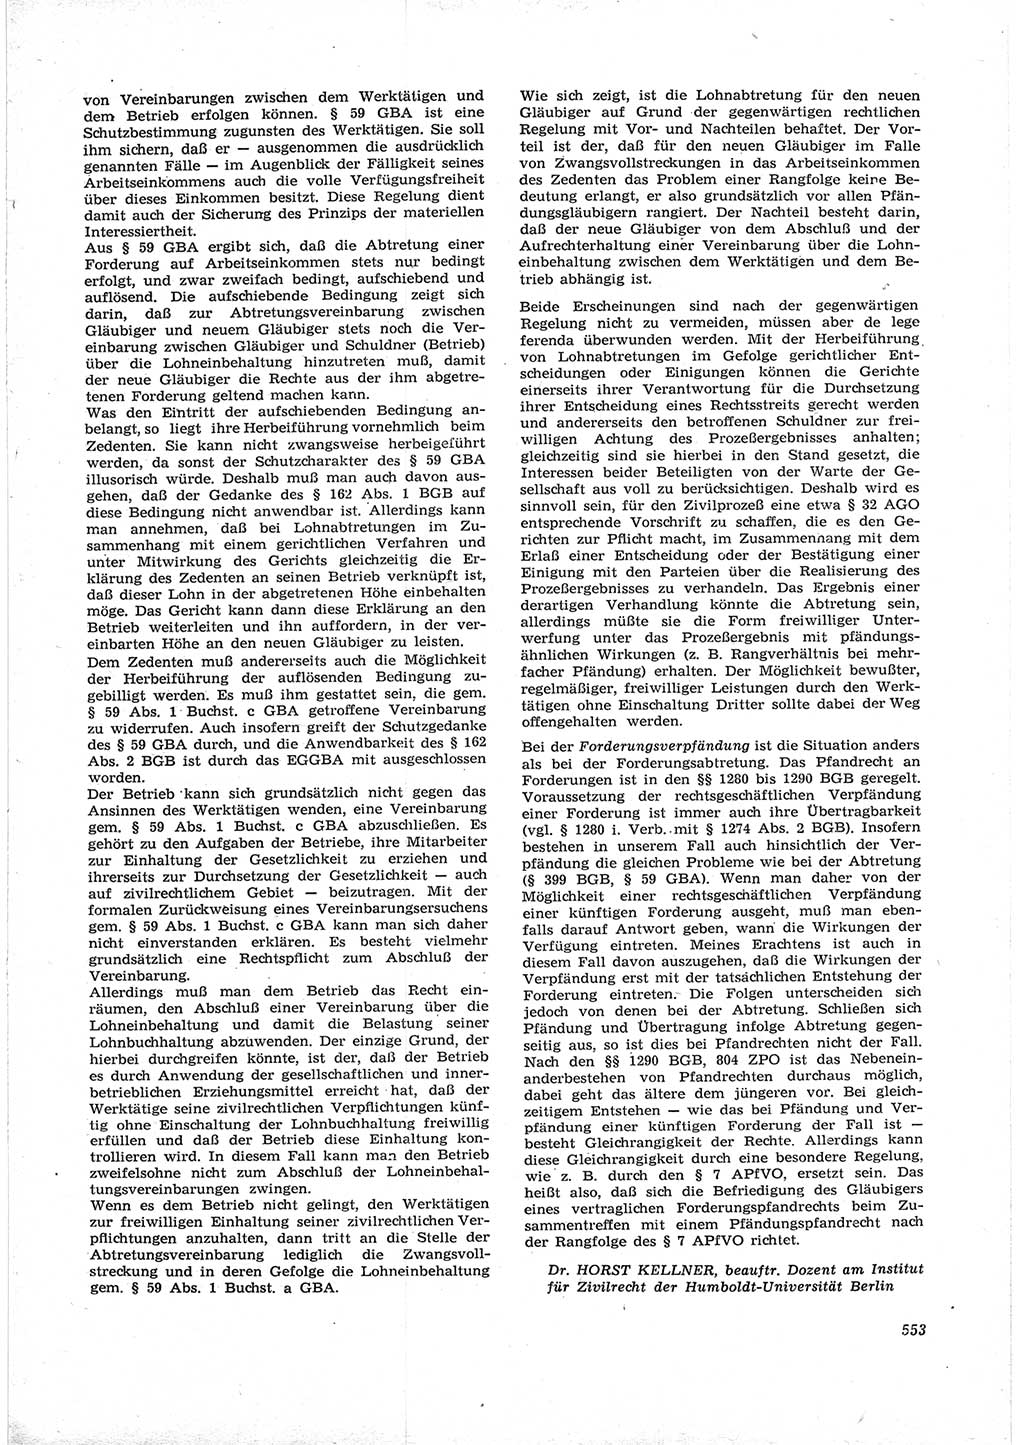 Neue Justiz (NJ), Zeitschrift für Recht und Rechtswissenschaft [Deutsche Demokratische Republik (DDR)], 17. Jahrgang 1963, Seite 553 (NJ DDR 1963, S. 553)